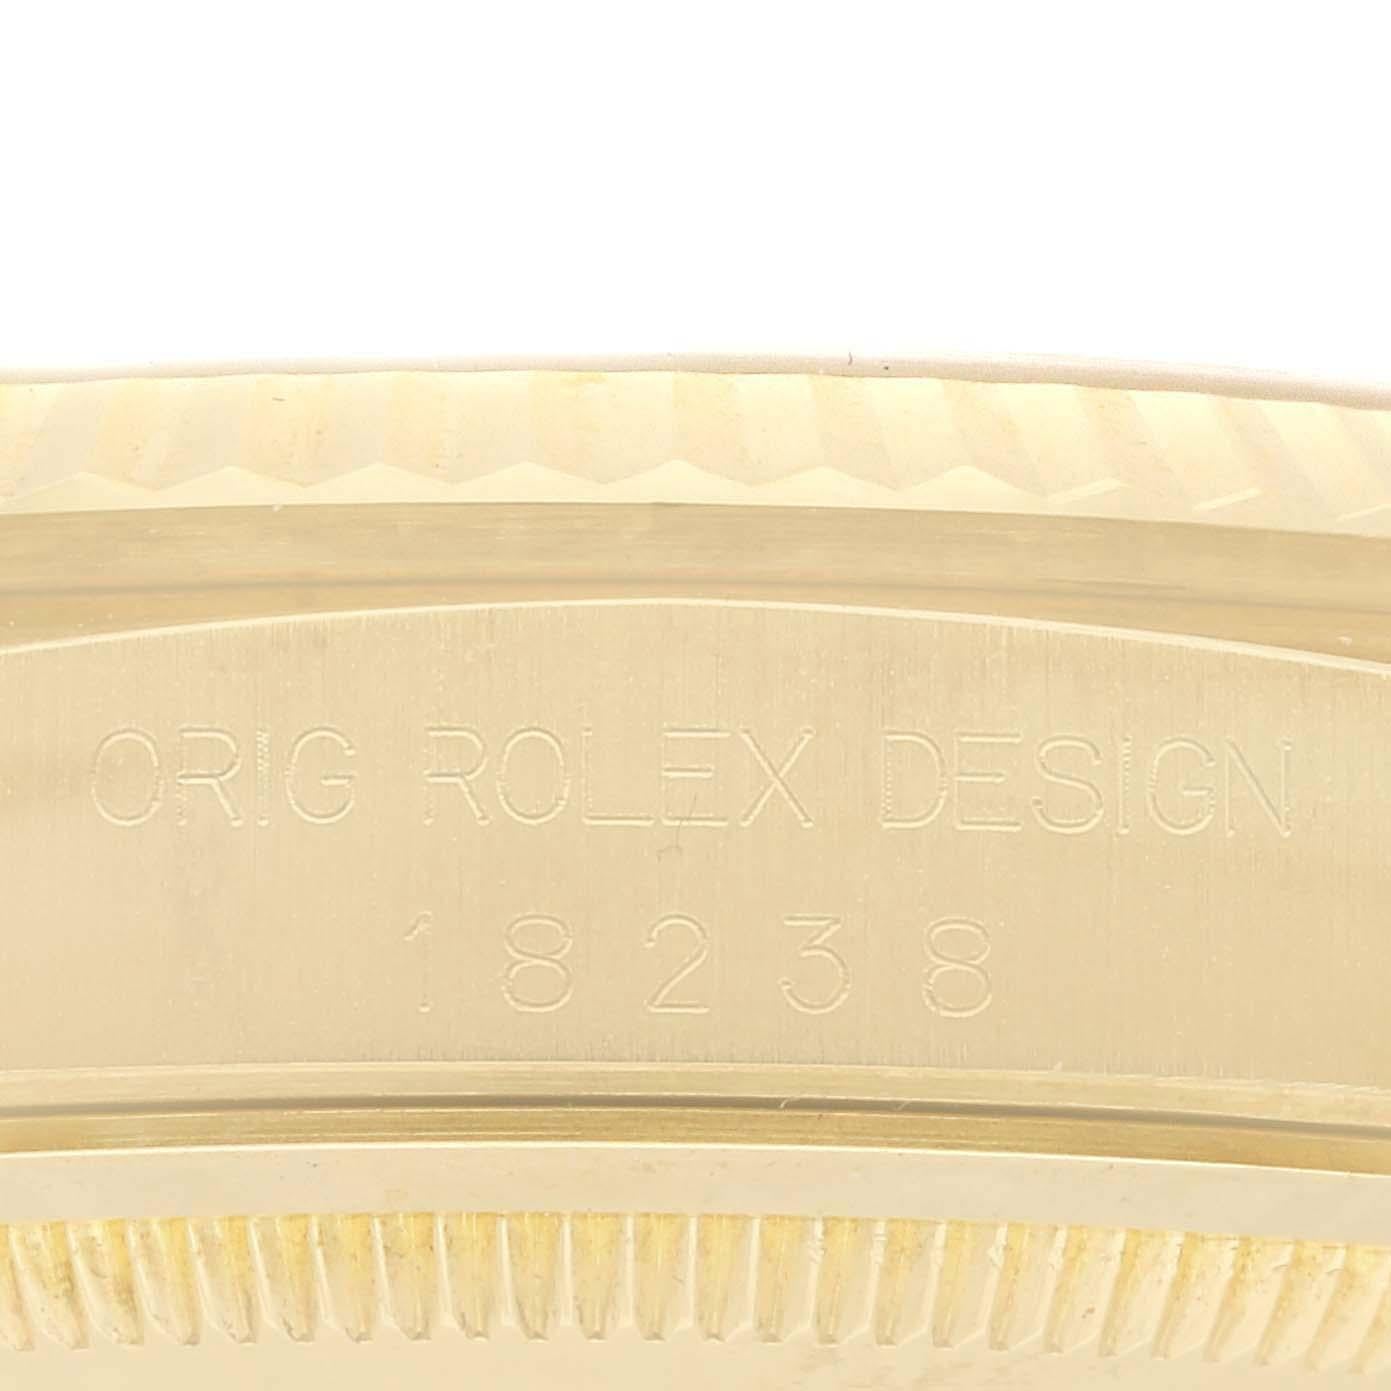 Rolex Präsident Day-Date Gelbgold Champagner Diamant-Zifferblatt Herrenuhr 18238. Offiziell zertifiziertes Chronometer-Automatikwerk mit automatischem Aufzug. Oyster-Gehäuse aus 18 Karat Gelbgold mit einem Durchmesser von 36,0 mm. Rolex Logo auf der